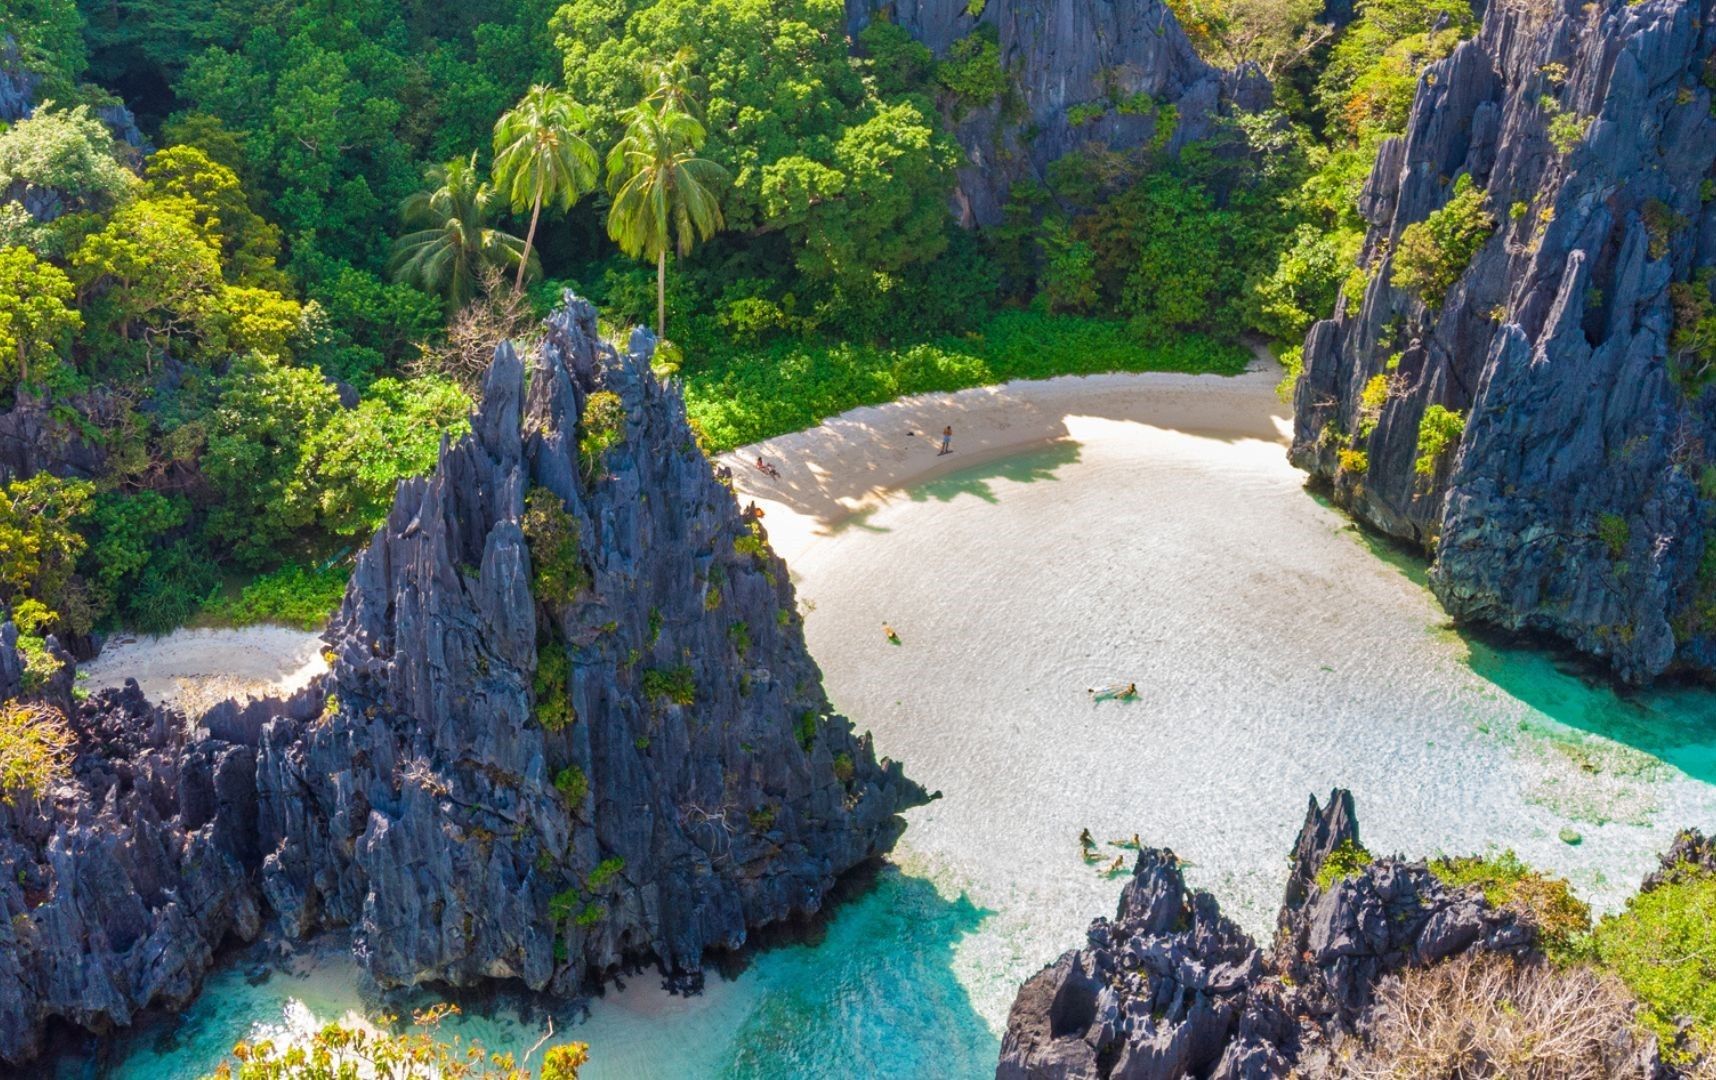 Pantai Tersembunyi Palawan dinobatkan sebagai pantai terbaik ke-3 di dunia